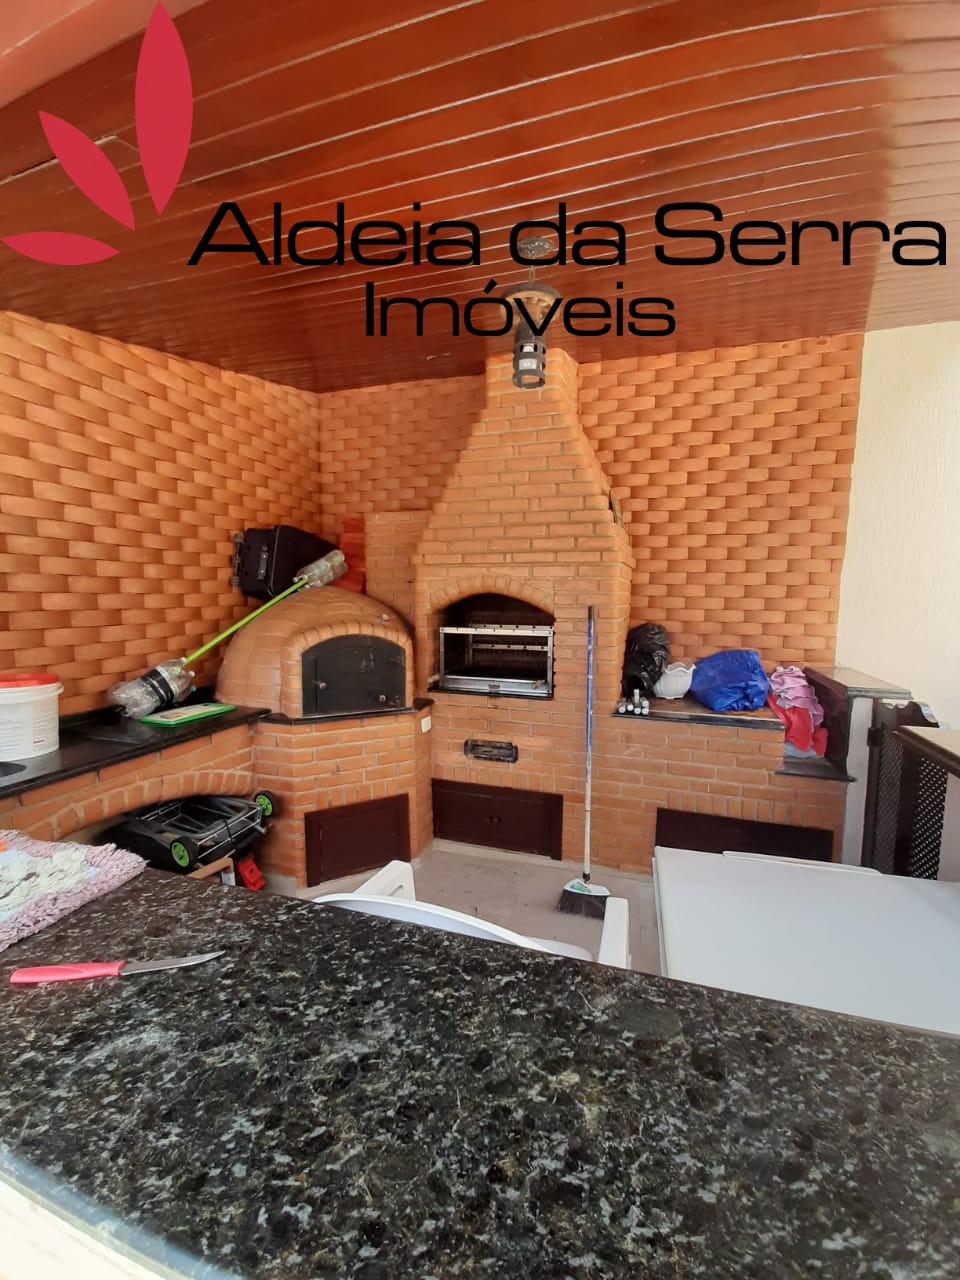 /admin/imoveis/fotos/IMG-20211105-WA0007.jpg Aldeia da Serra Imoveis